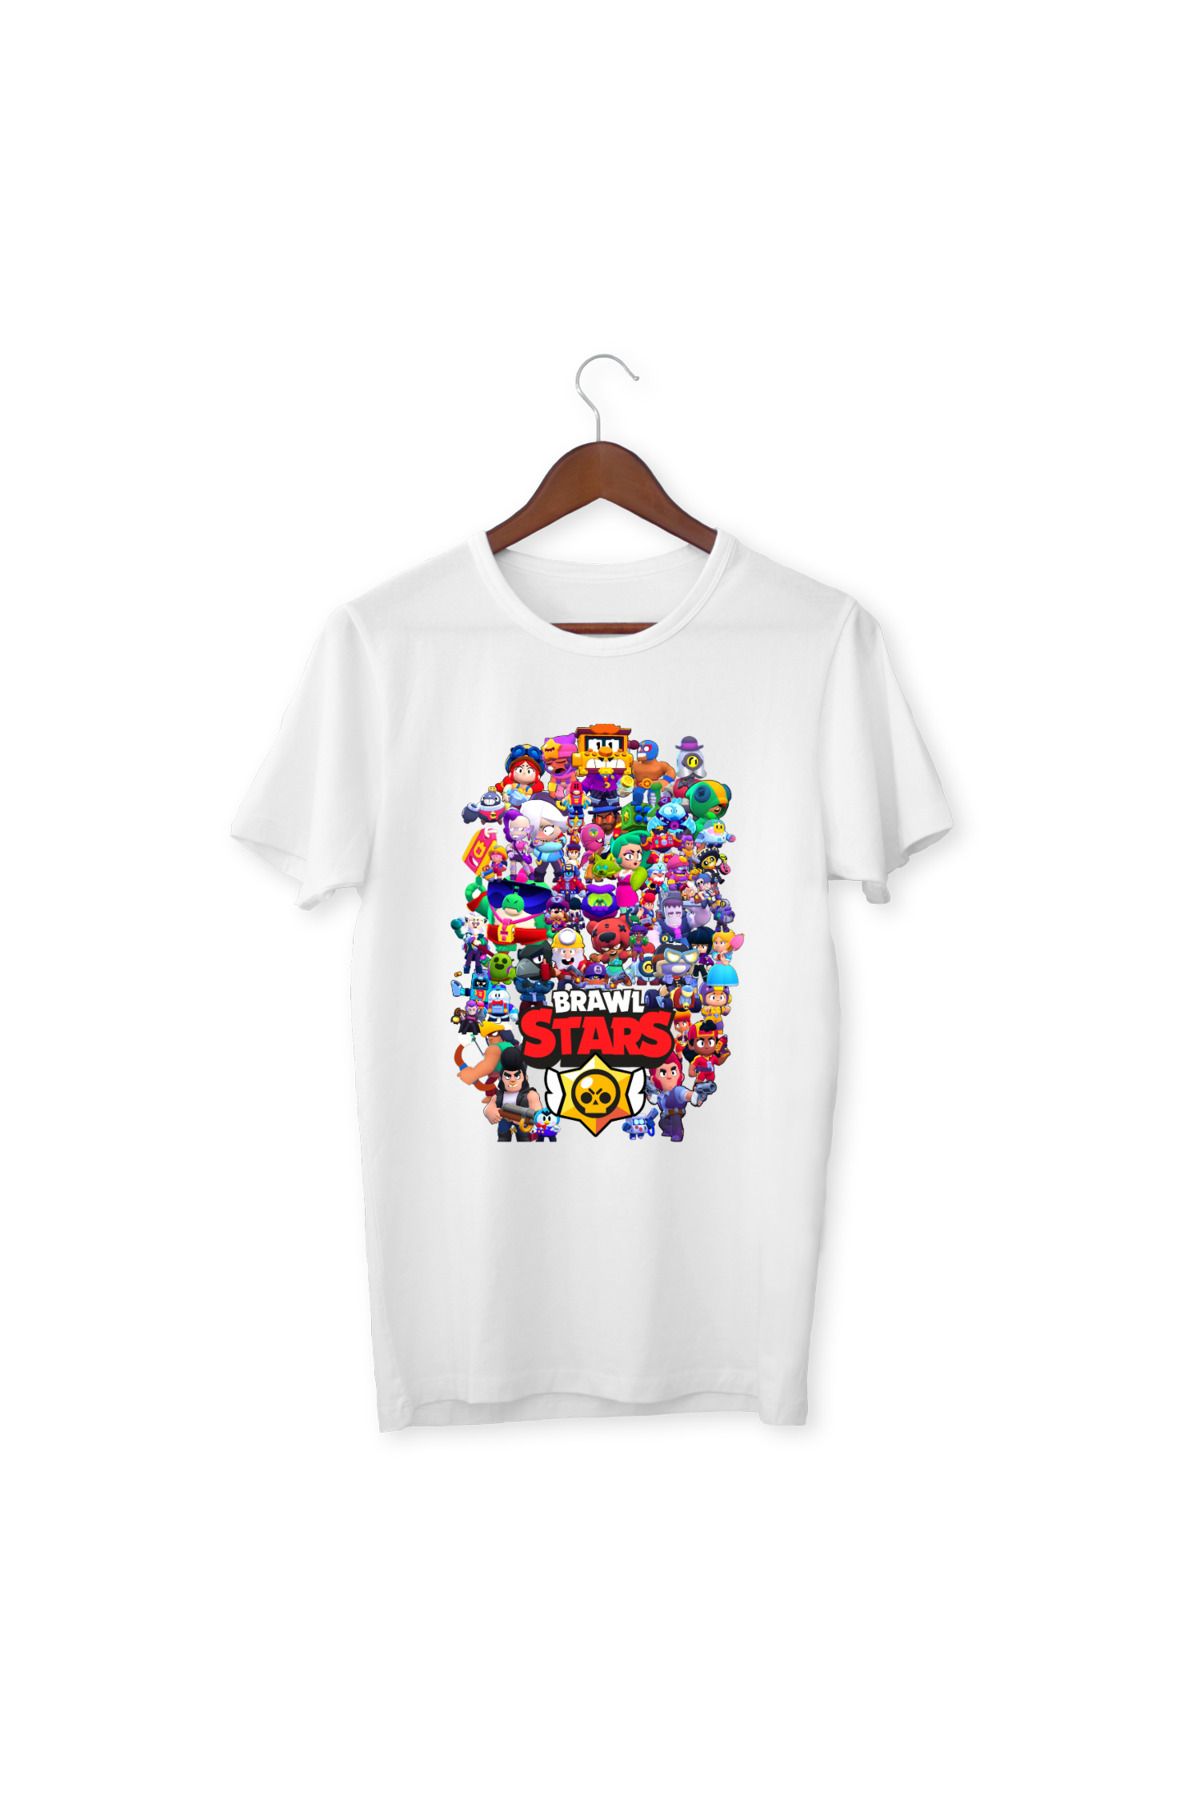 YAPO TİCARET Brawl Stars Çocuk Yetişkin Beyaz T-shirt Unisex Çocuk Tişört